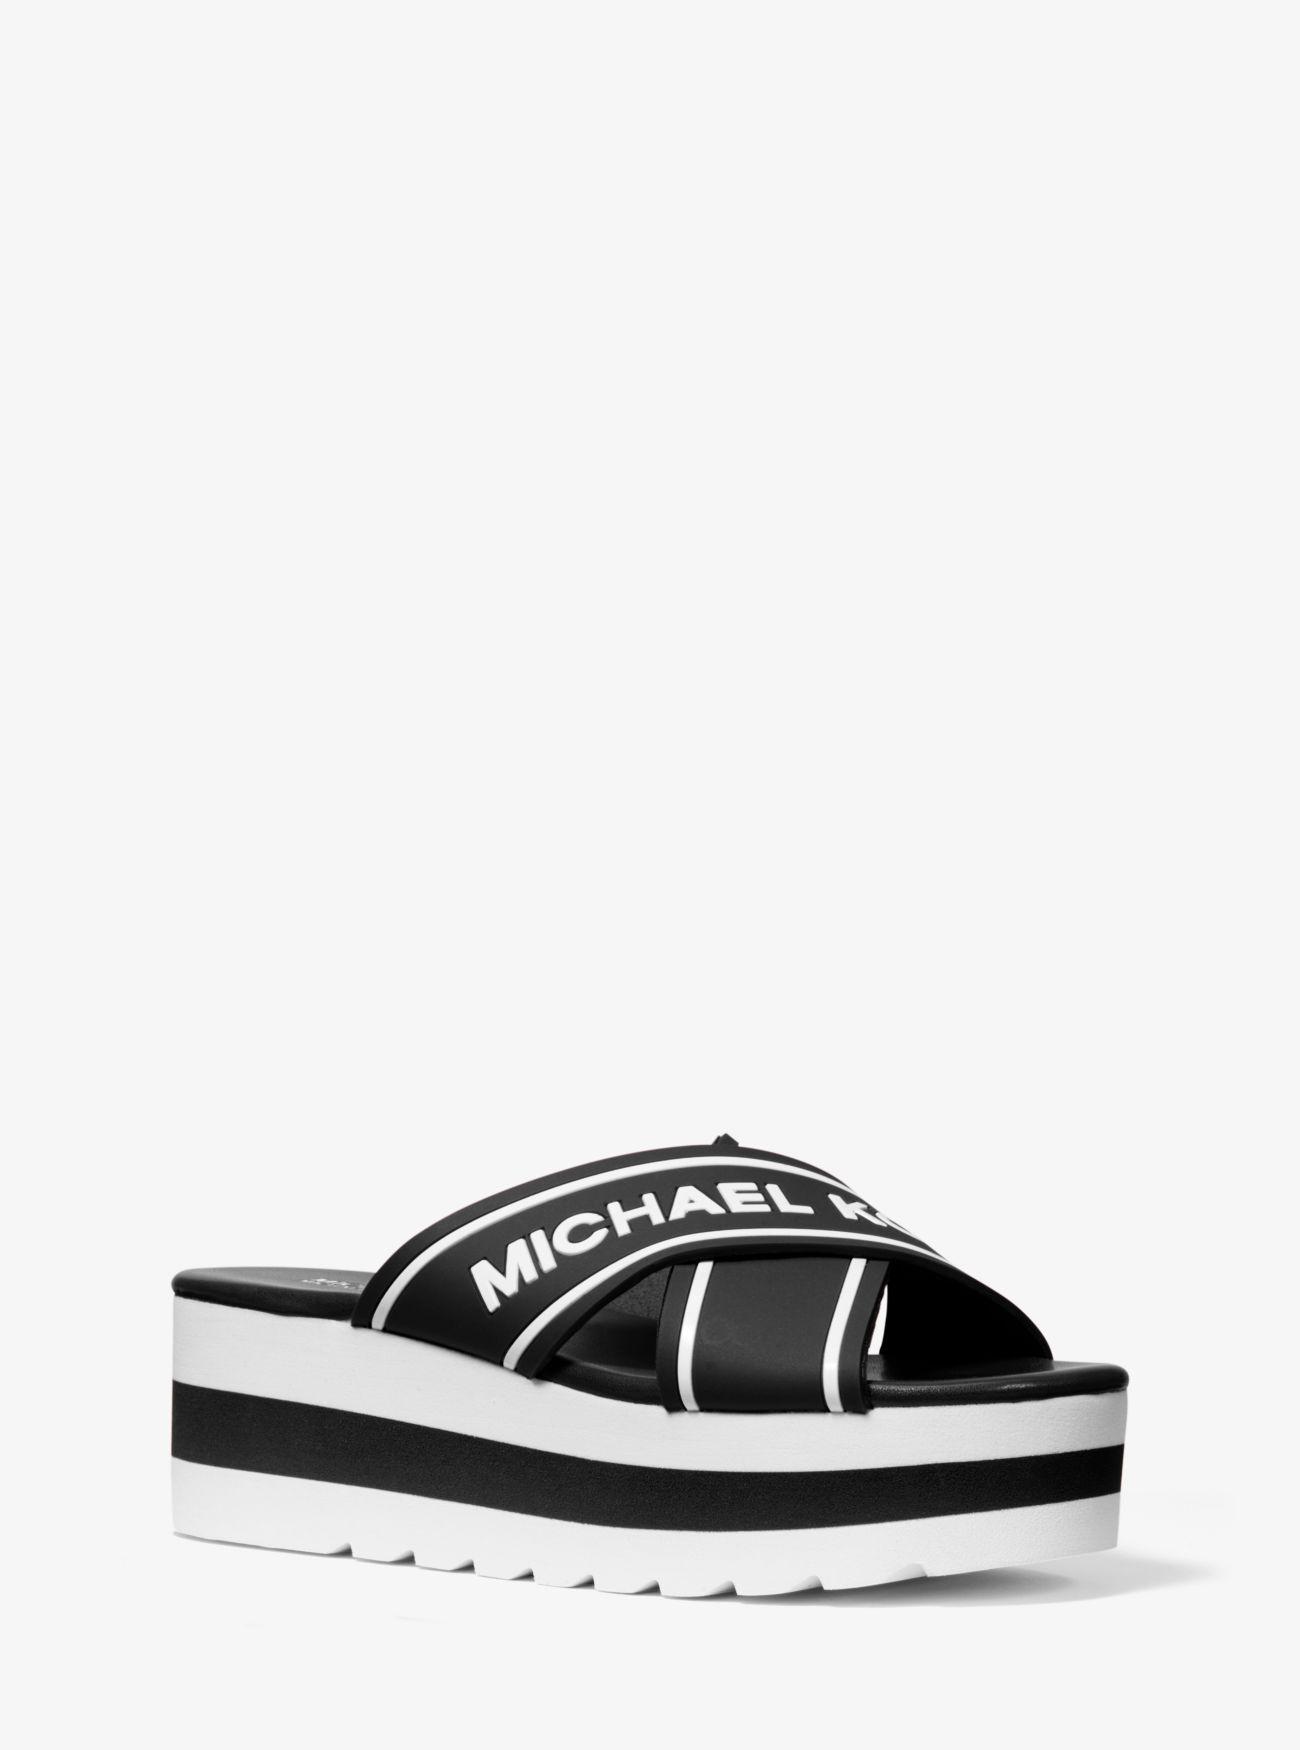 Michael Kors Demi Logo Tape Slide Sandal in Black - Lyst